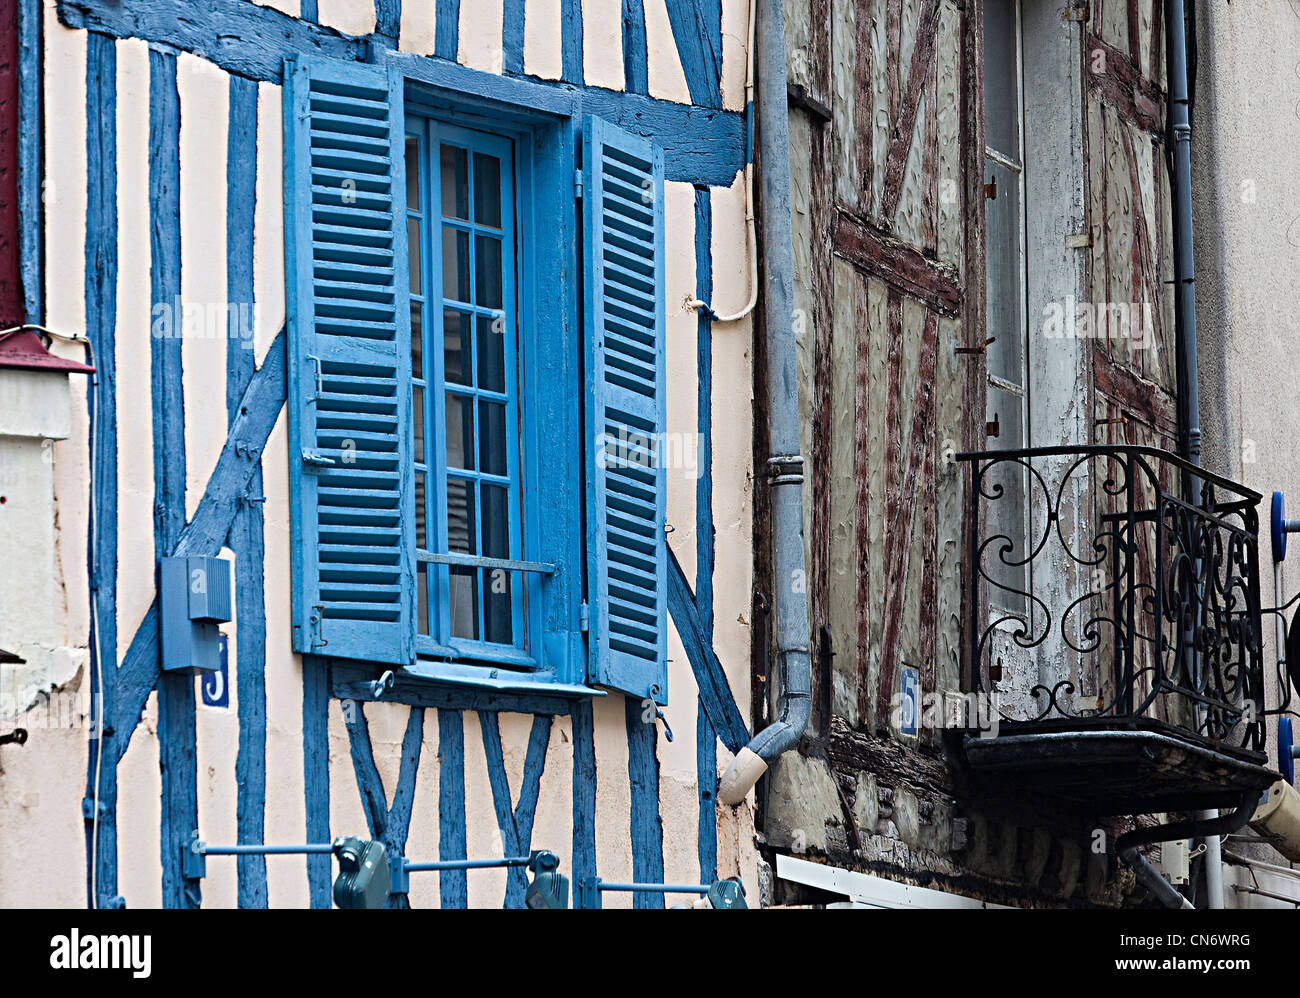 Des volets bleus sur la fenêtre de l'édifice médiéval, Auxerre, Bourgogne, France Banque D'Images